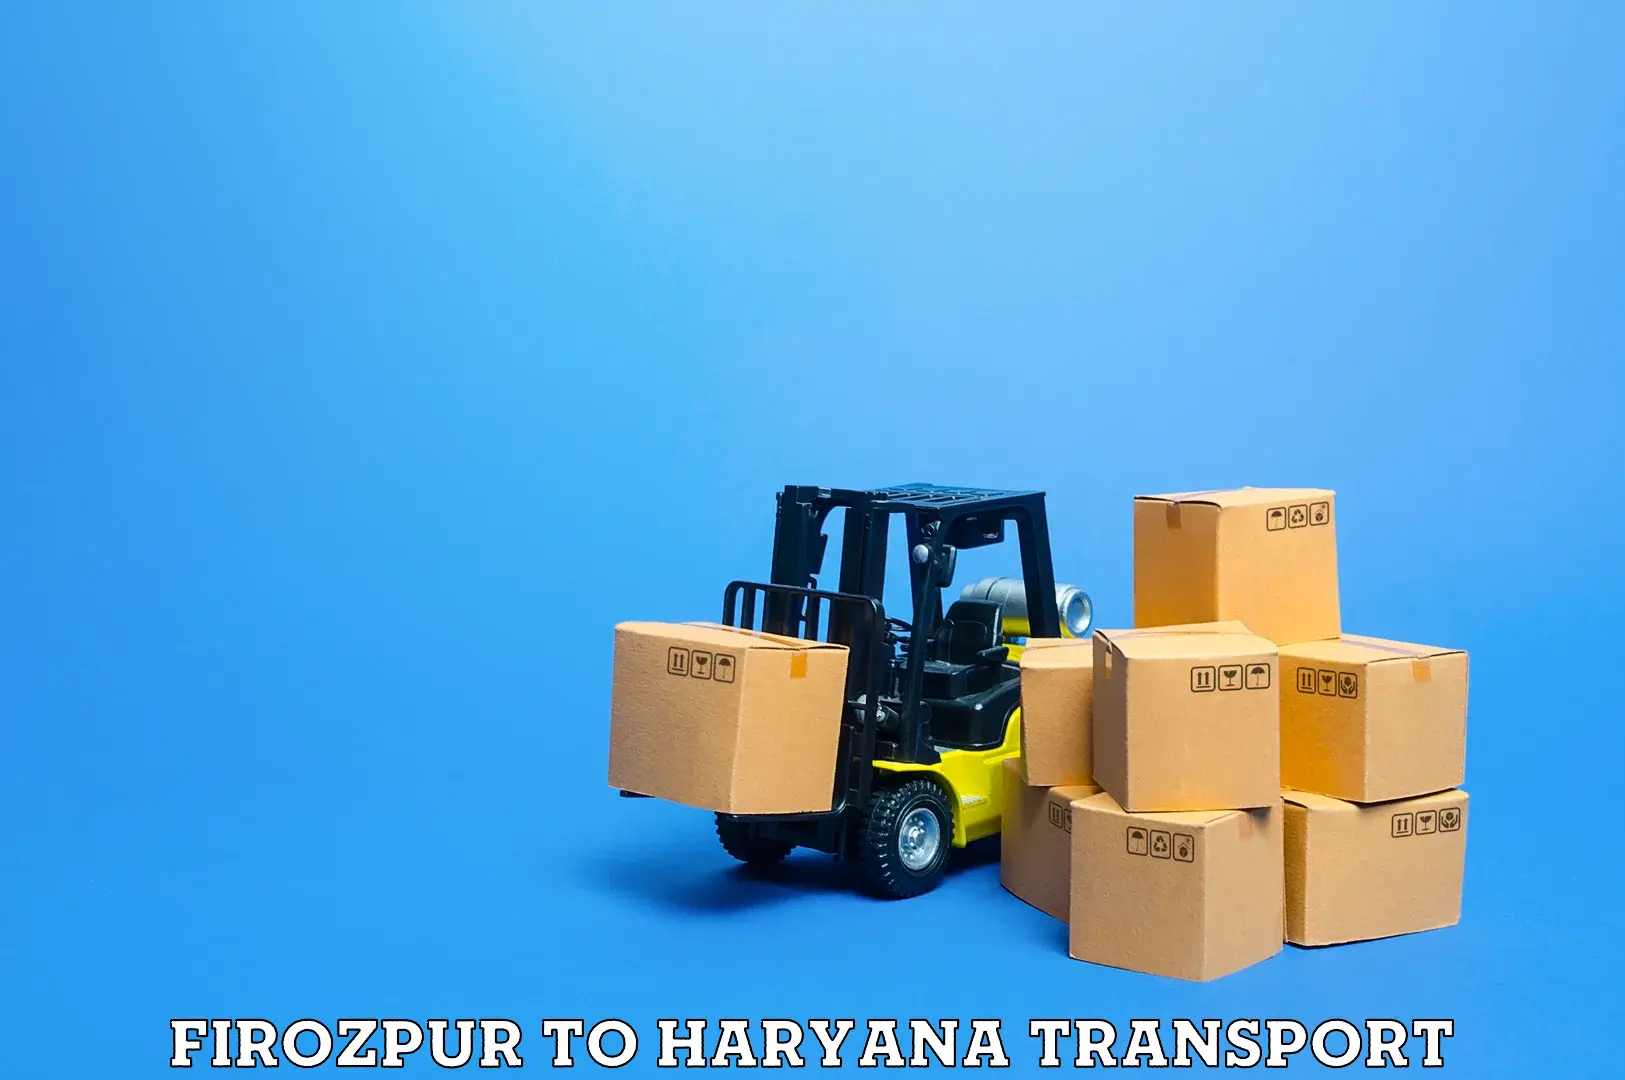 Air freight transport services Firozpur to Gurugram